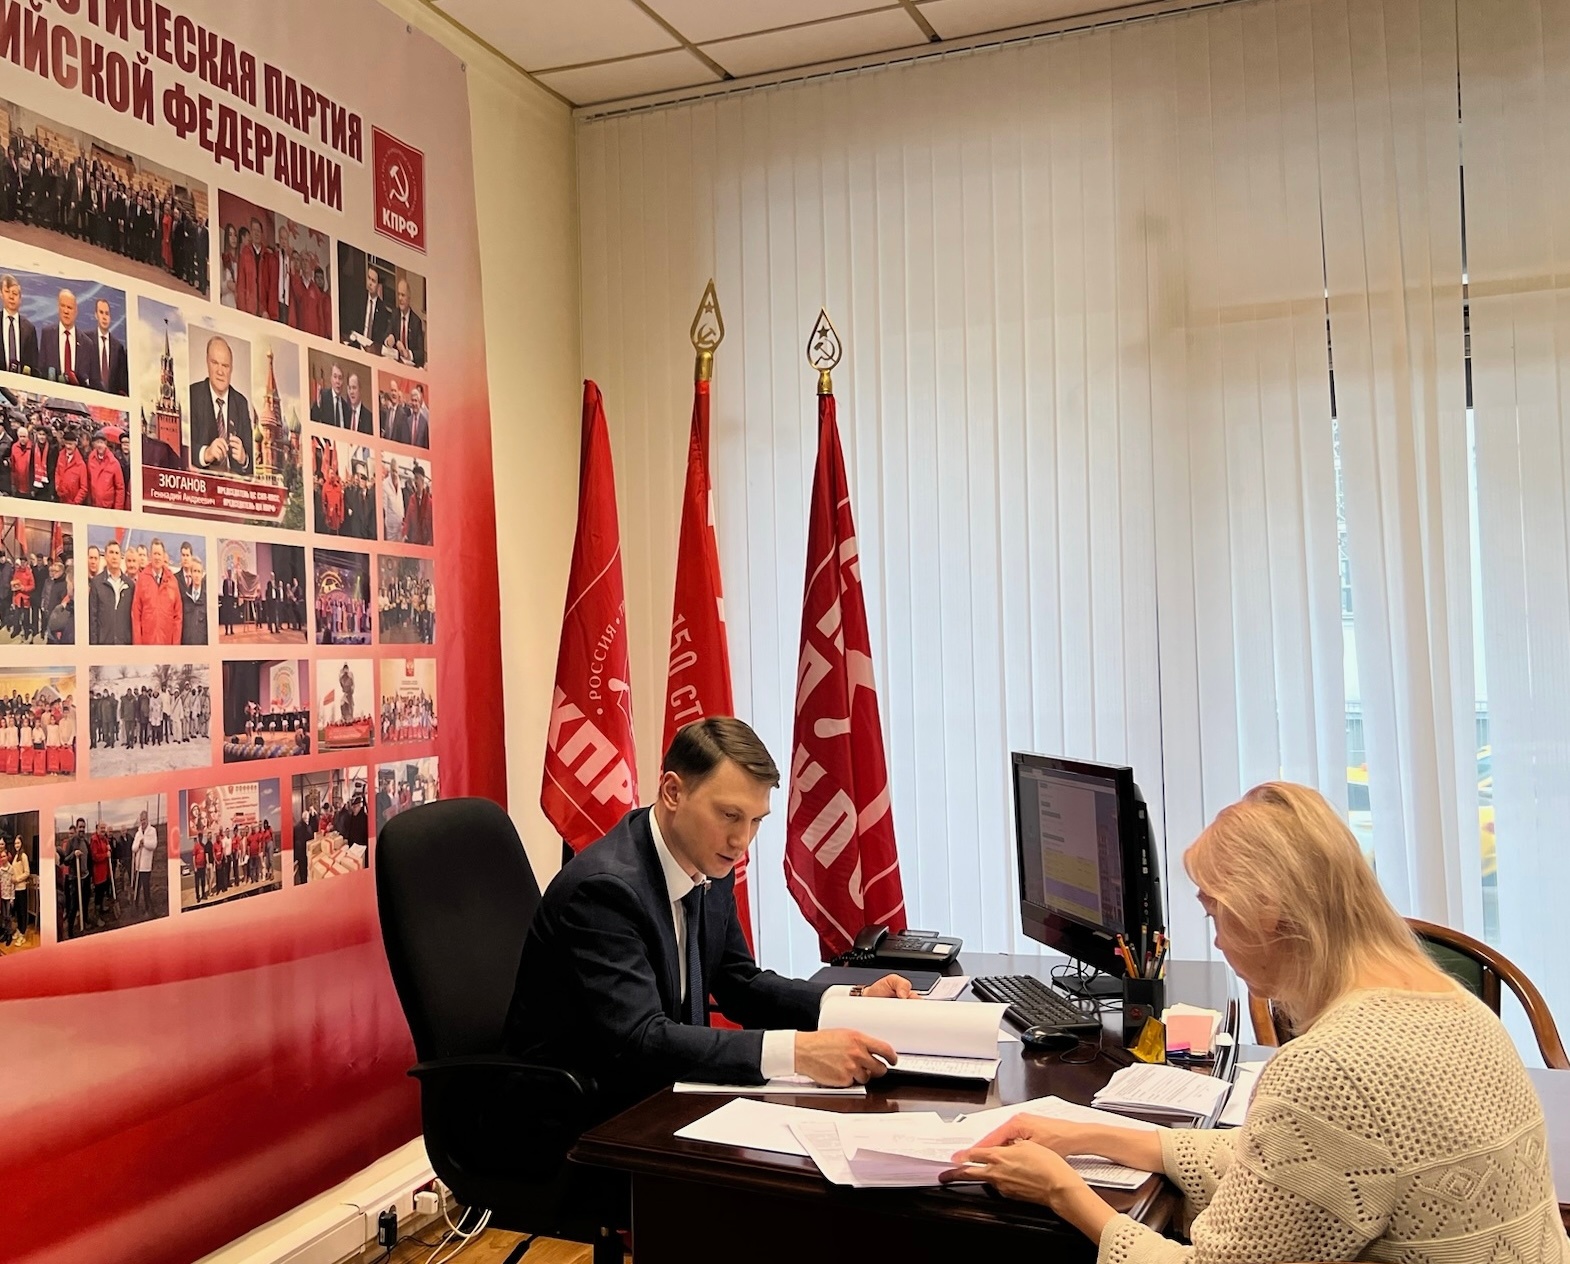 Рабочая неделя в Москве началась с приема граждан в общественной приемной фракции КПРФ в Государственной Думе.